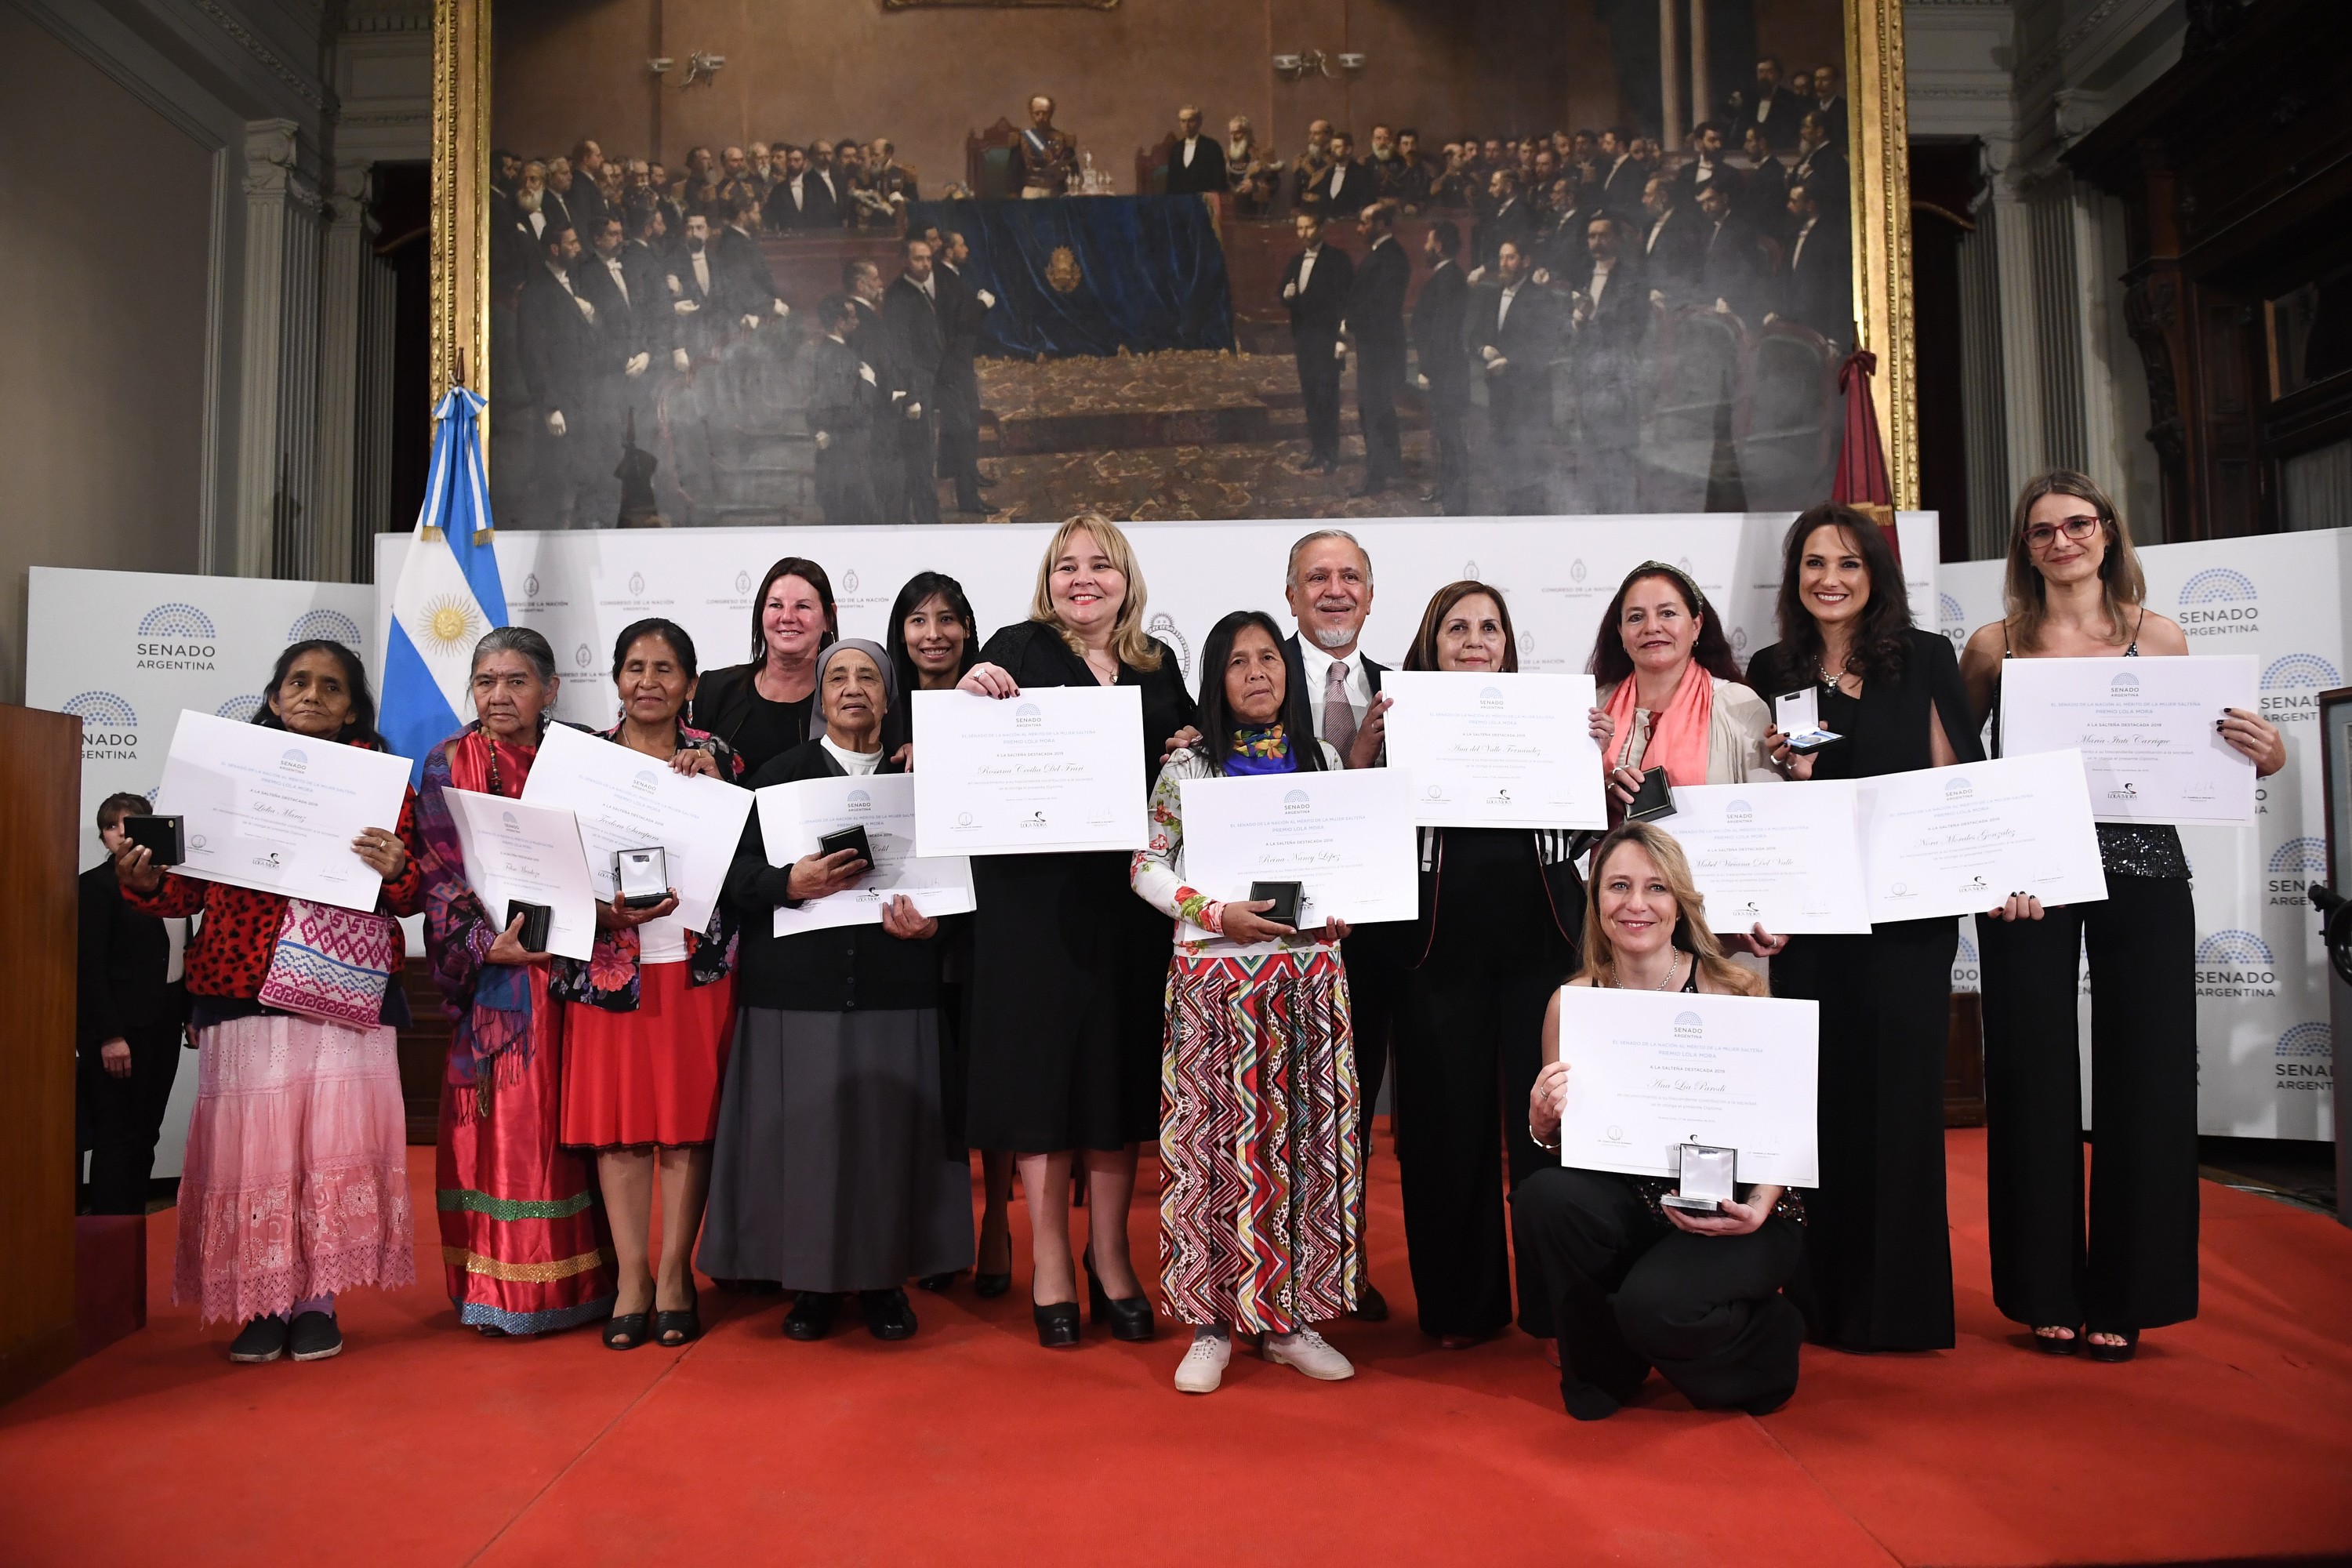 H.S.N. Evento.Premio Lola Mora al Mérito de la Mujer Salteña.
(Gabriel Cano - Comunicación Institucional)